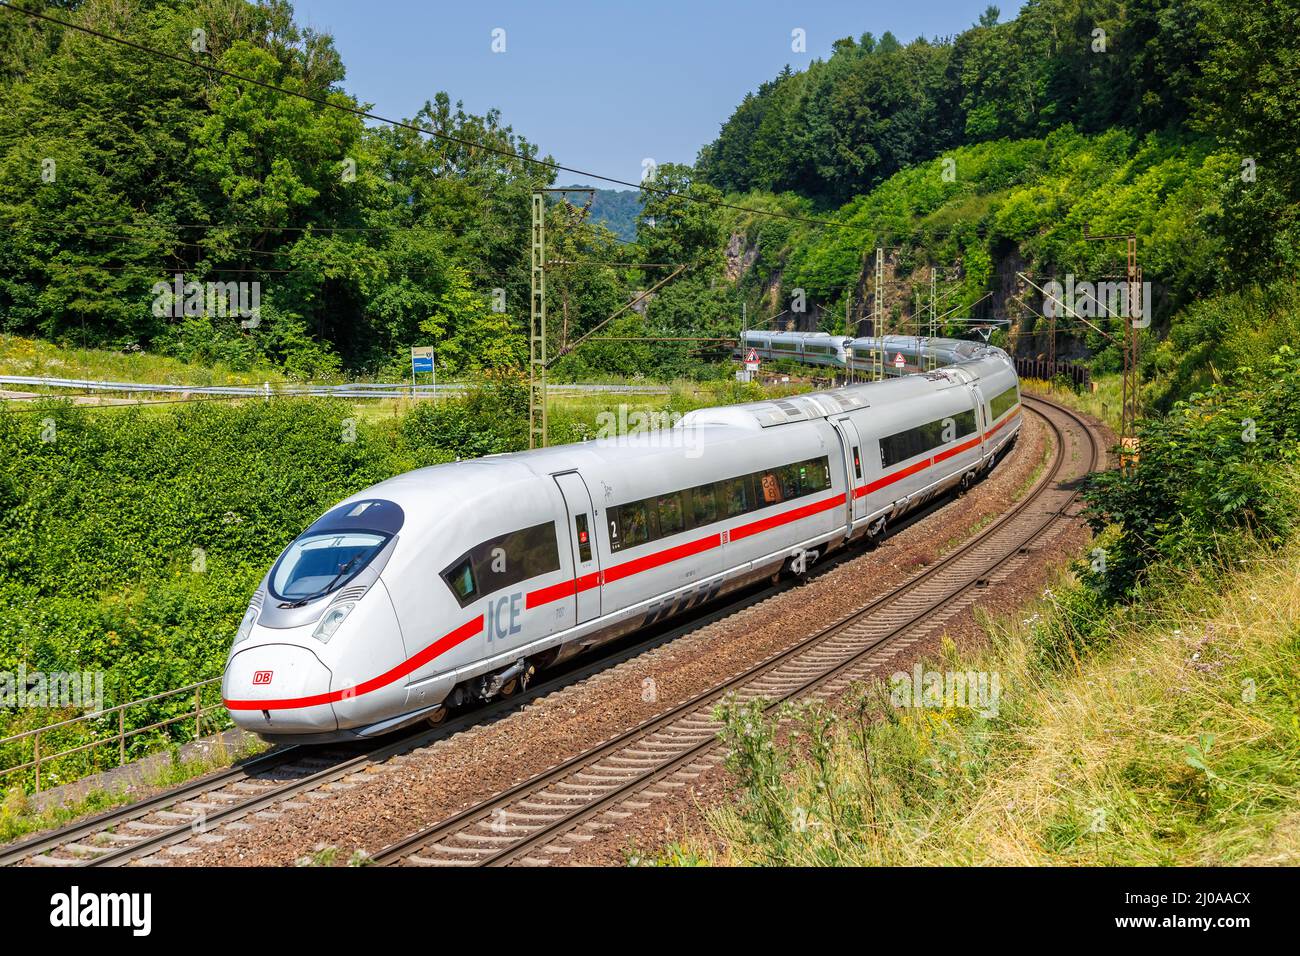 Amstetten, Deutschland - 21. Juli 2021: ICE 3 Hochgeschwindigkeitszug der Deutschen Bahn auf Geislinger Steige bei Amstetten, Deutschland. Stockfoto